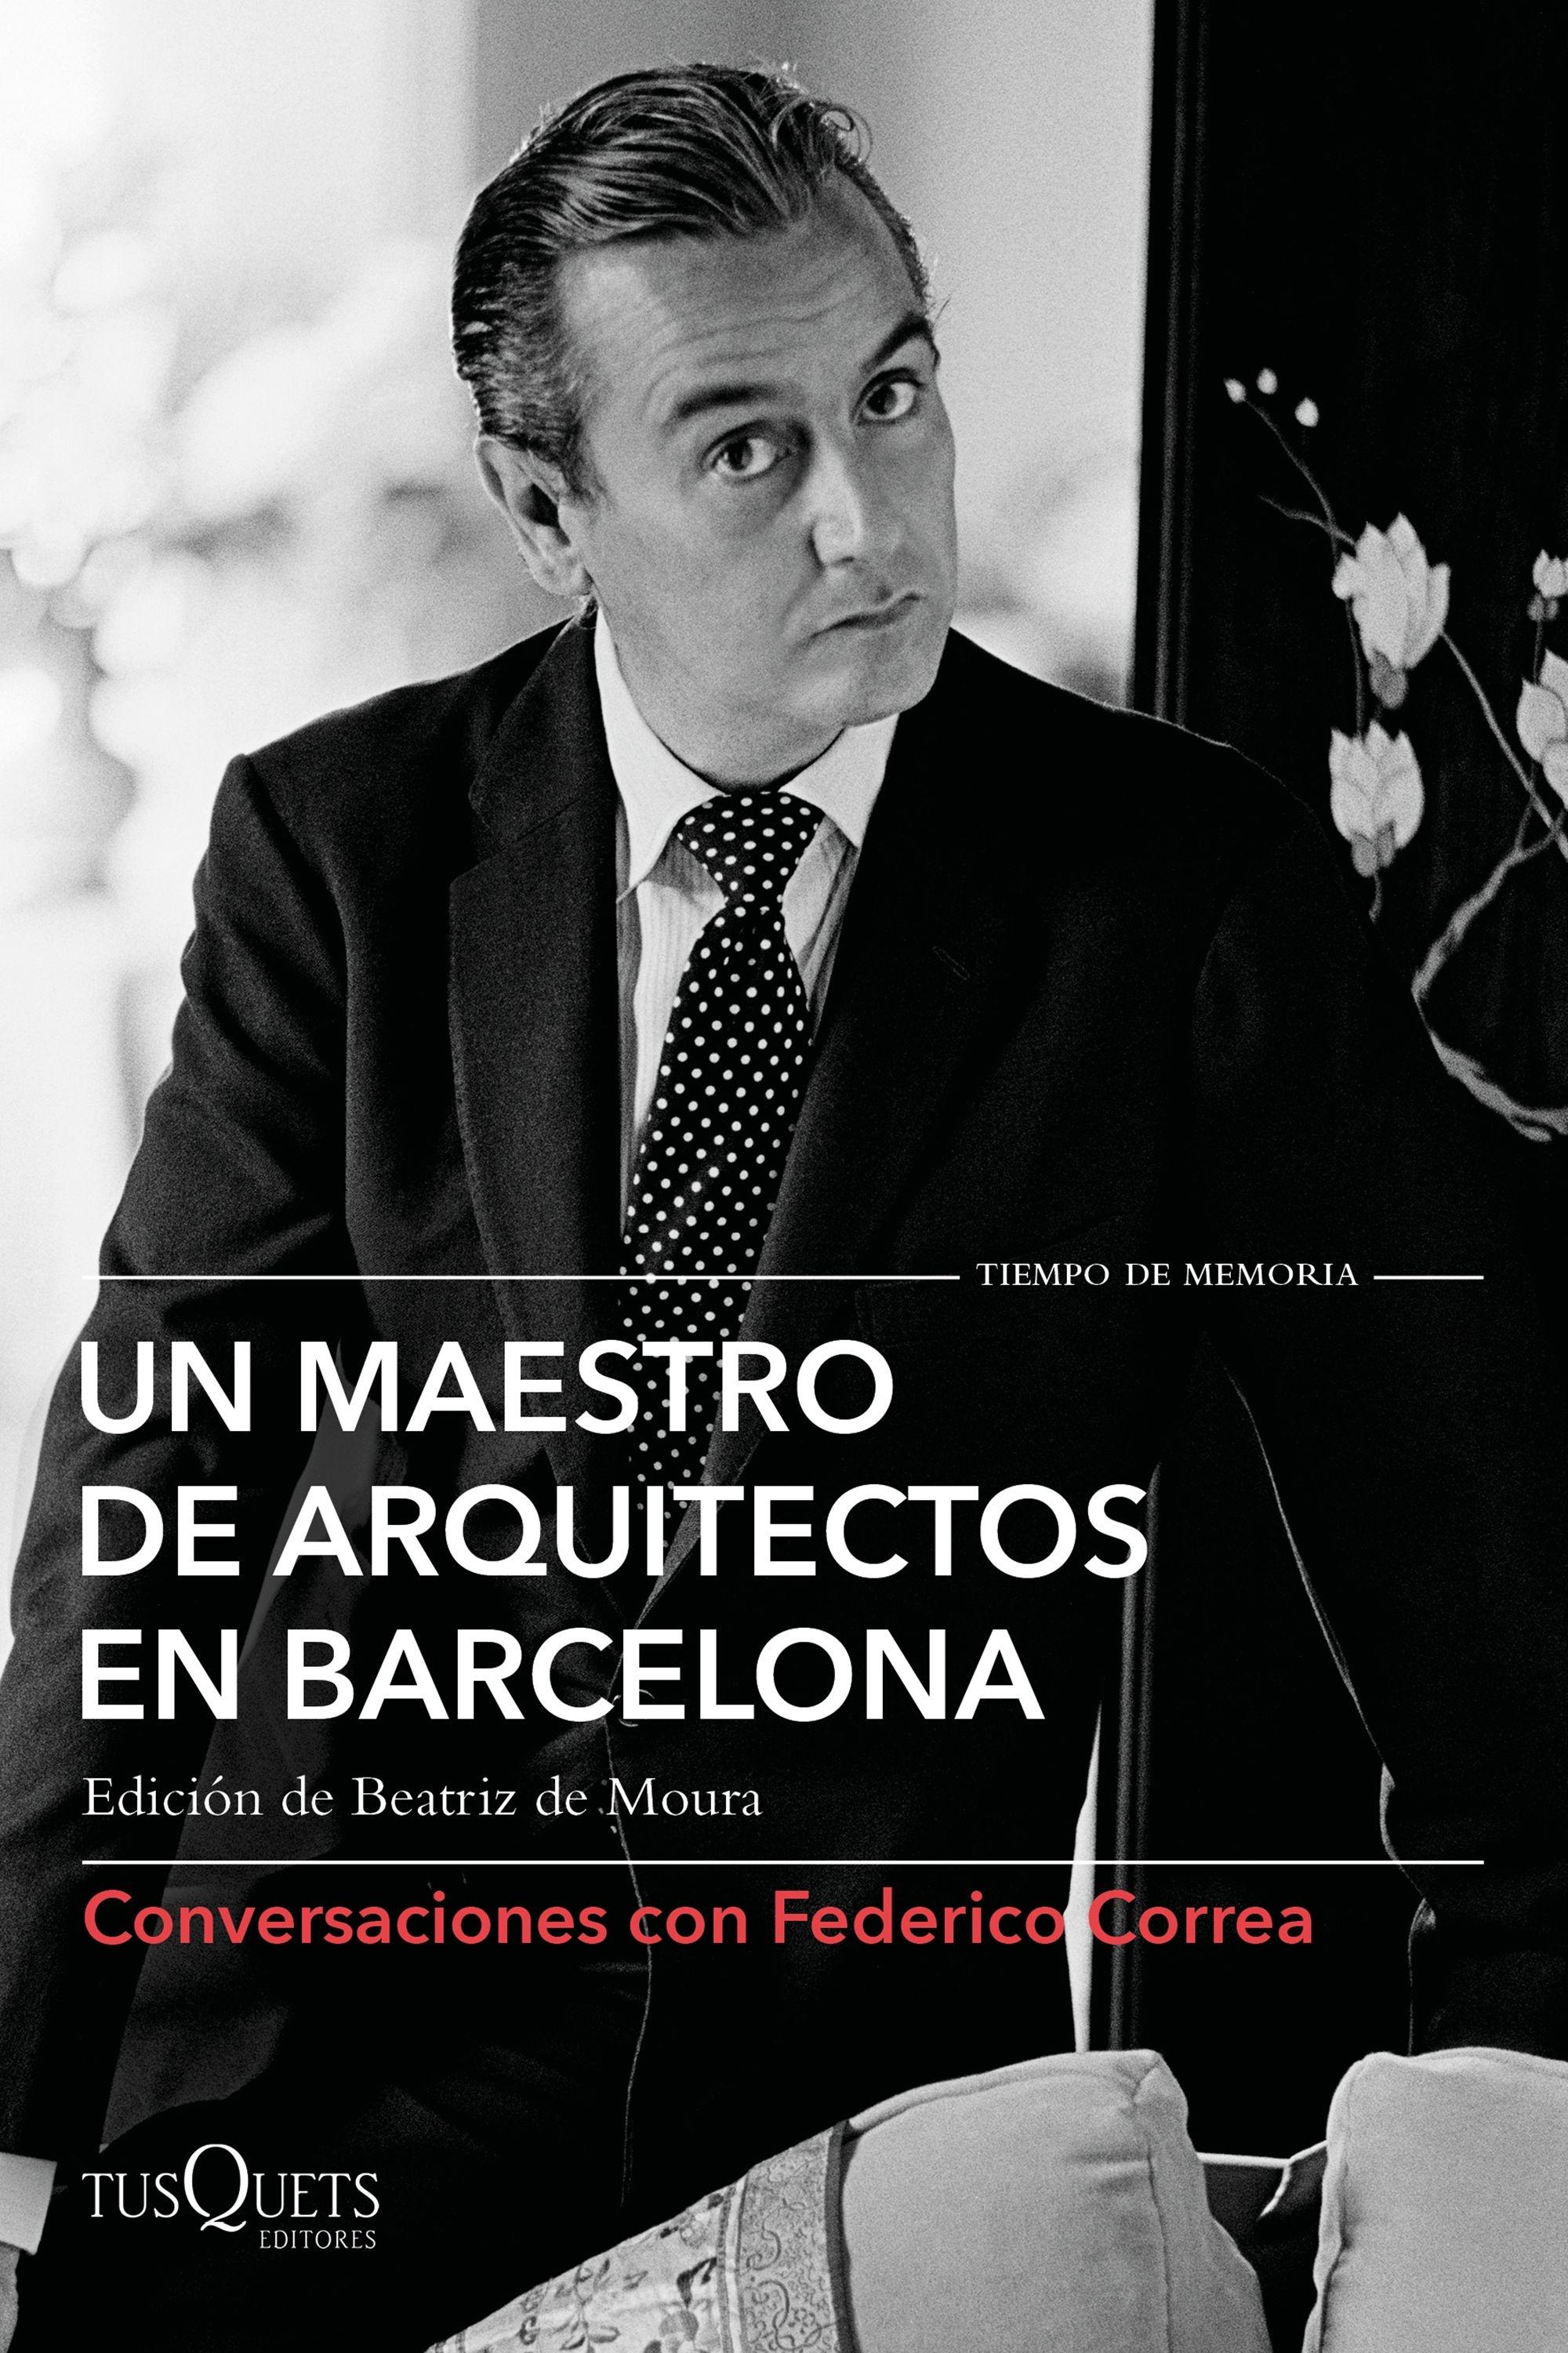 Un maestro de arquitectos en Barcelona "Conversaciones con Federico Correa"